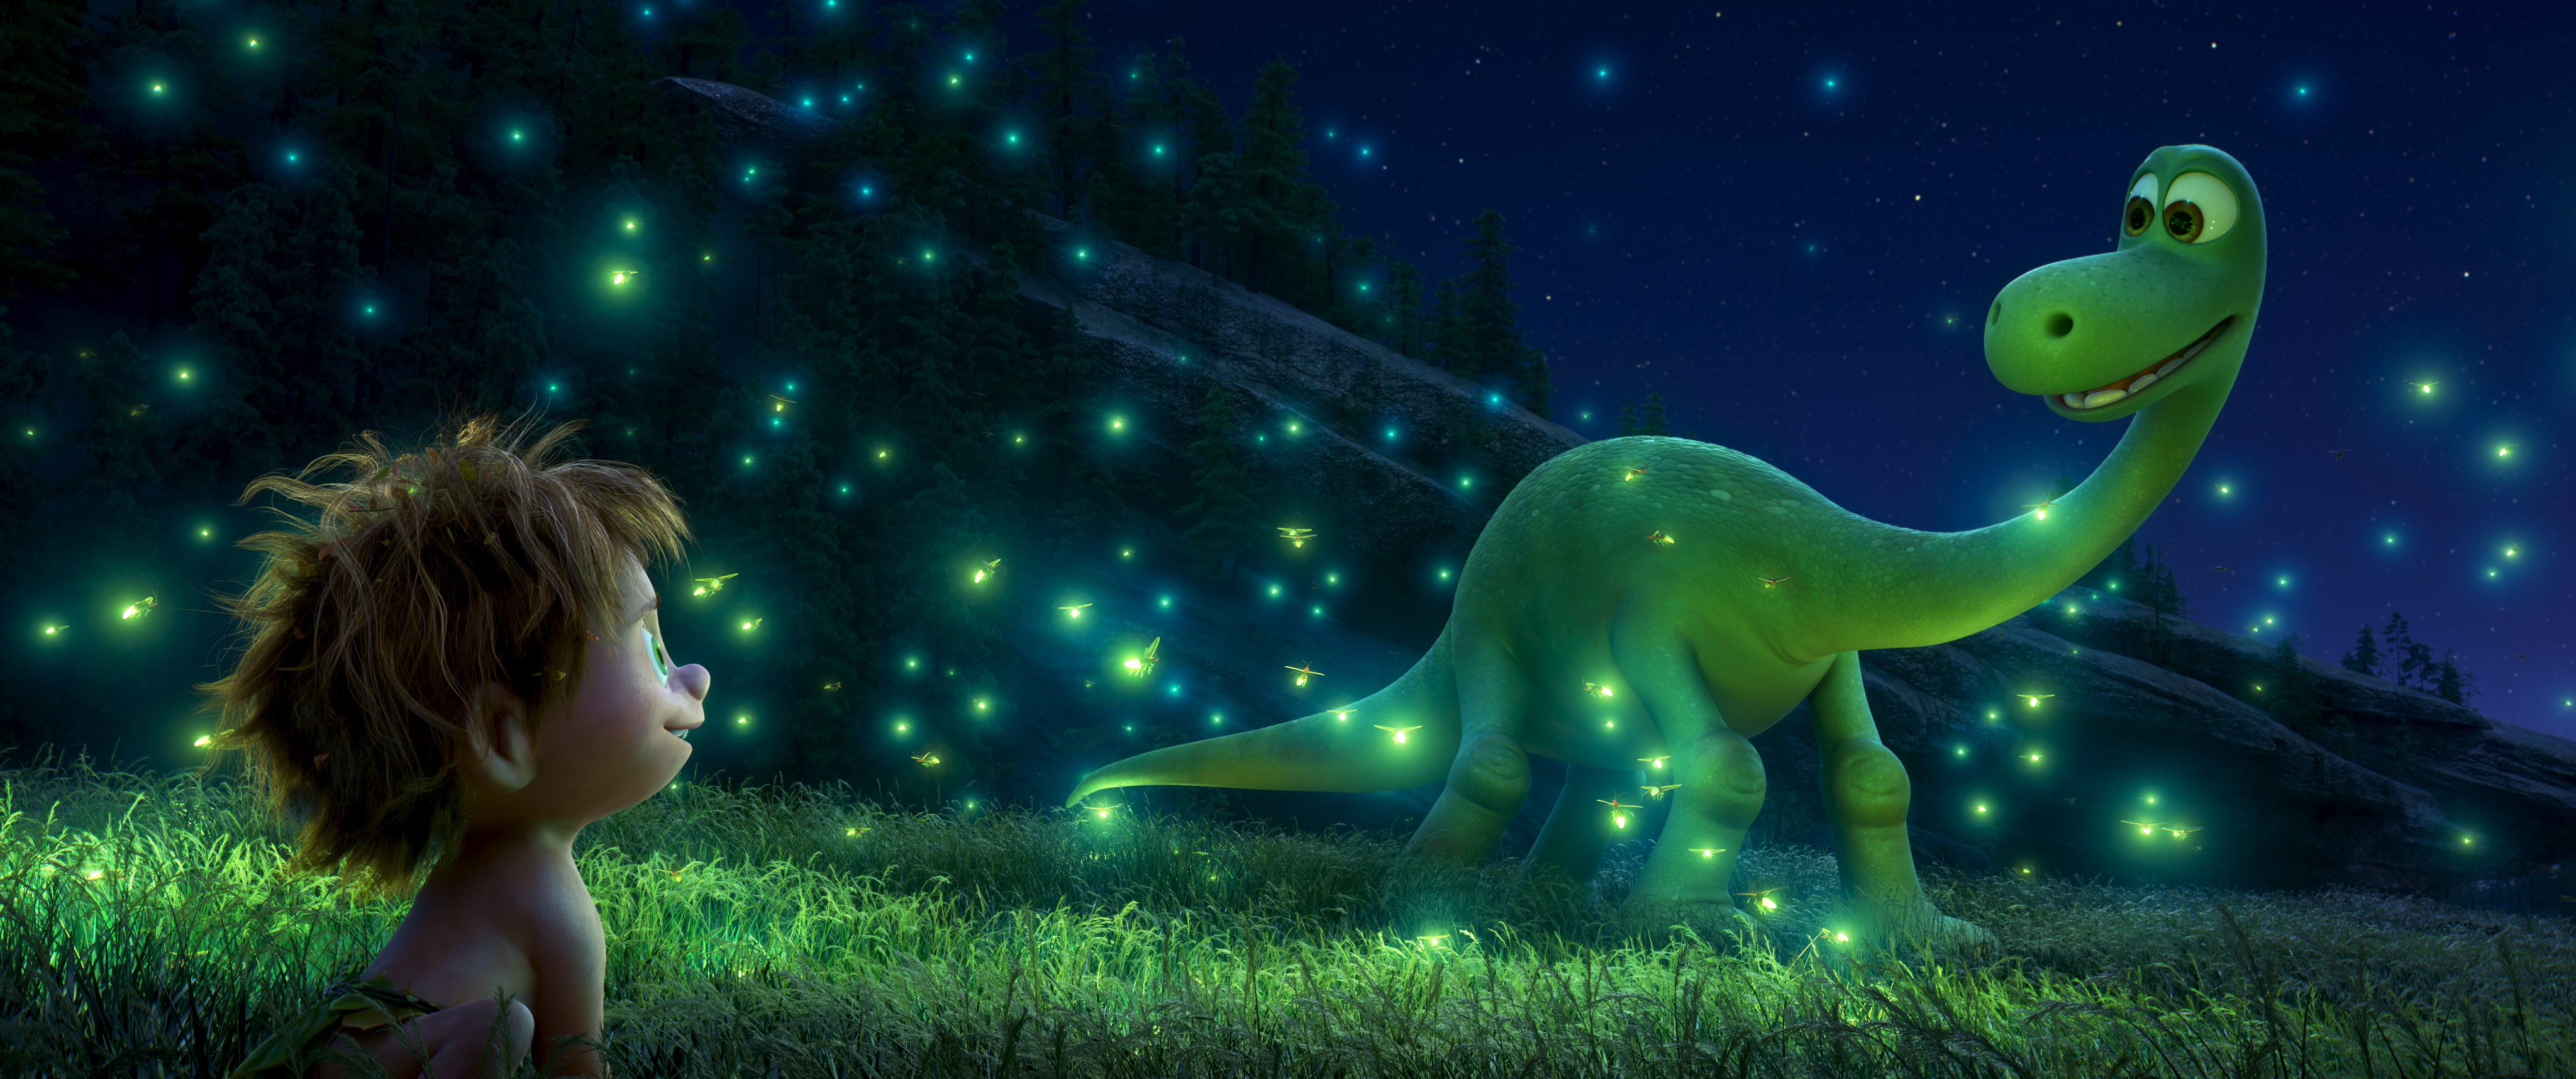 O bom dinossauro”, nova animação da Pixar, não tem alma